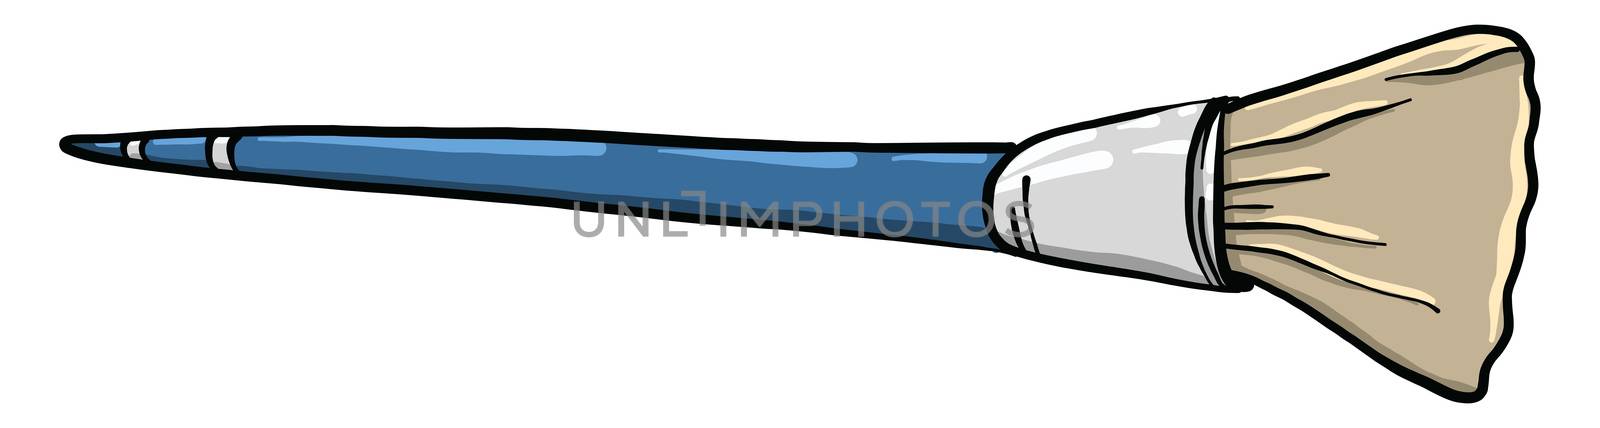 Blue paint brush , illustration, vector on white background by Morphart